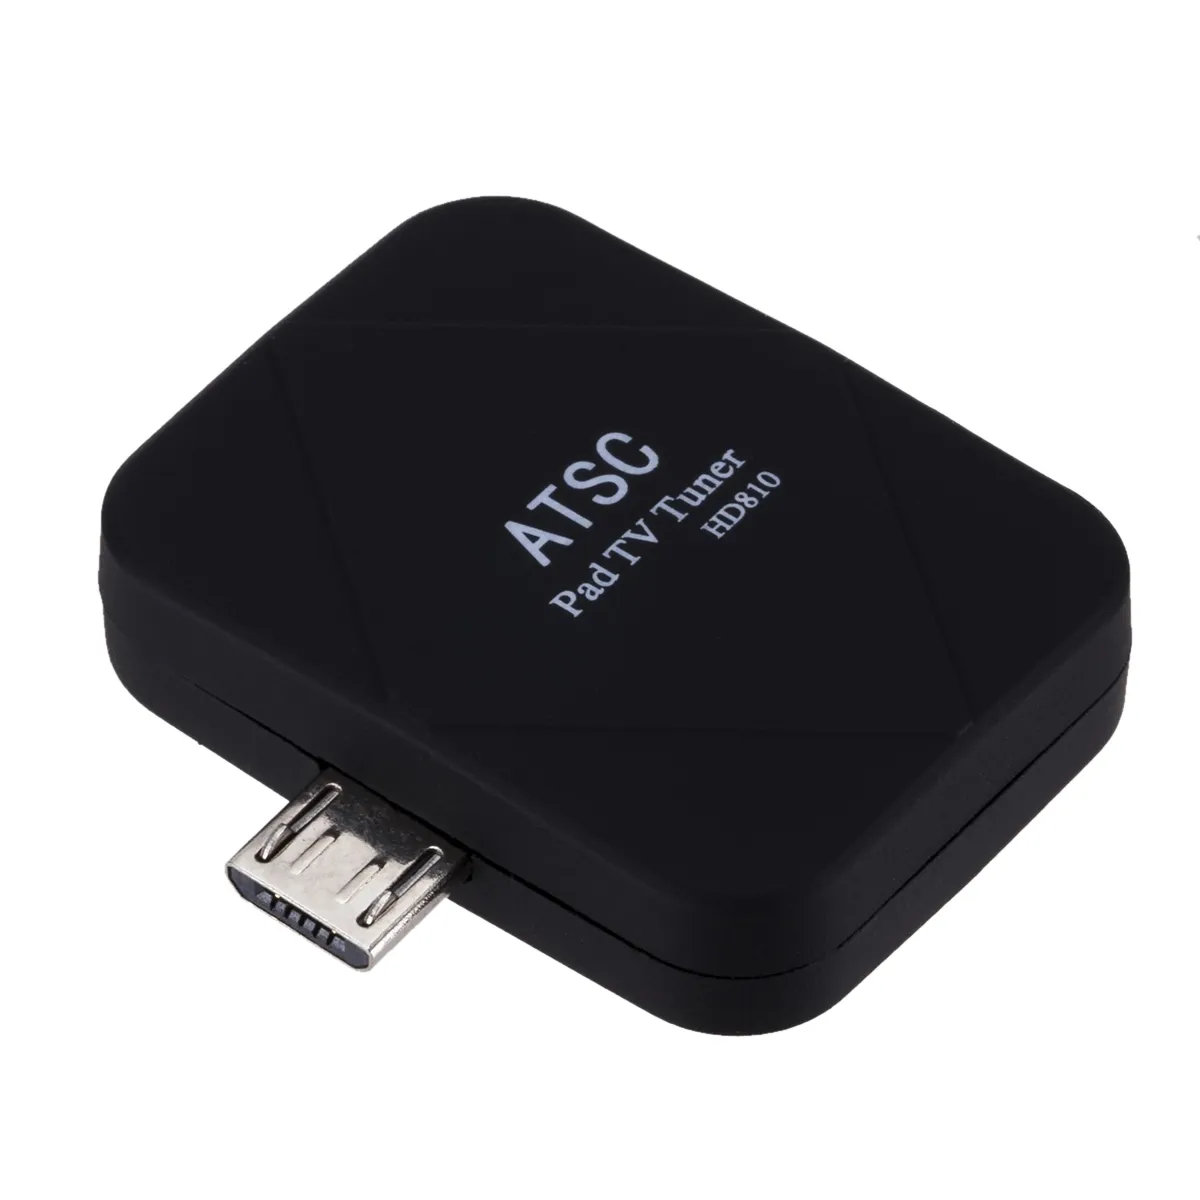 Micro USB 2.0 Di Động Xem ATSC TV Tuner Stick cho Android Điện Thoại/Pad